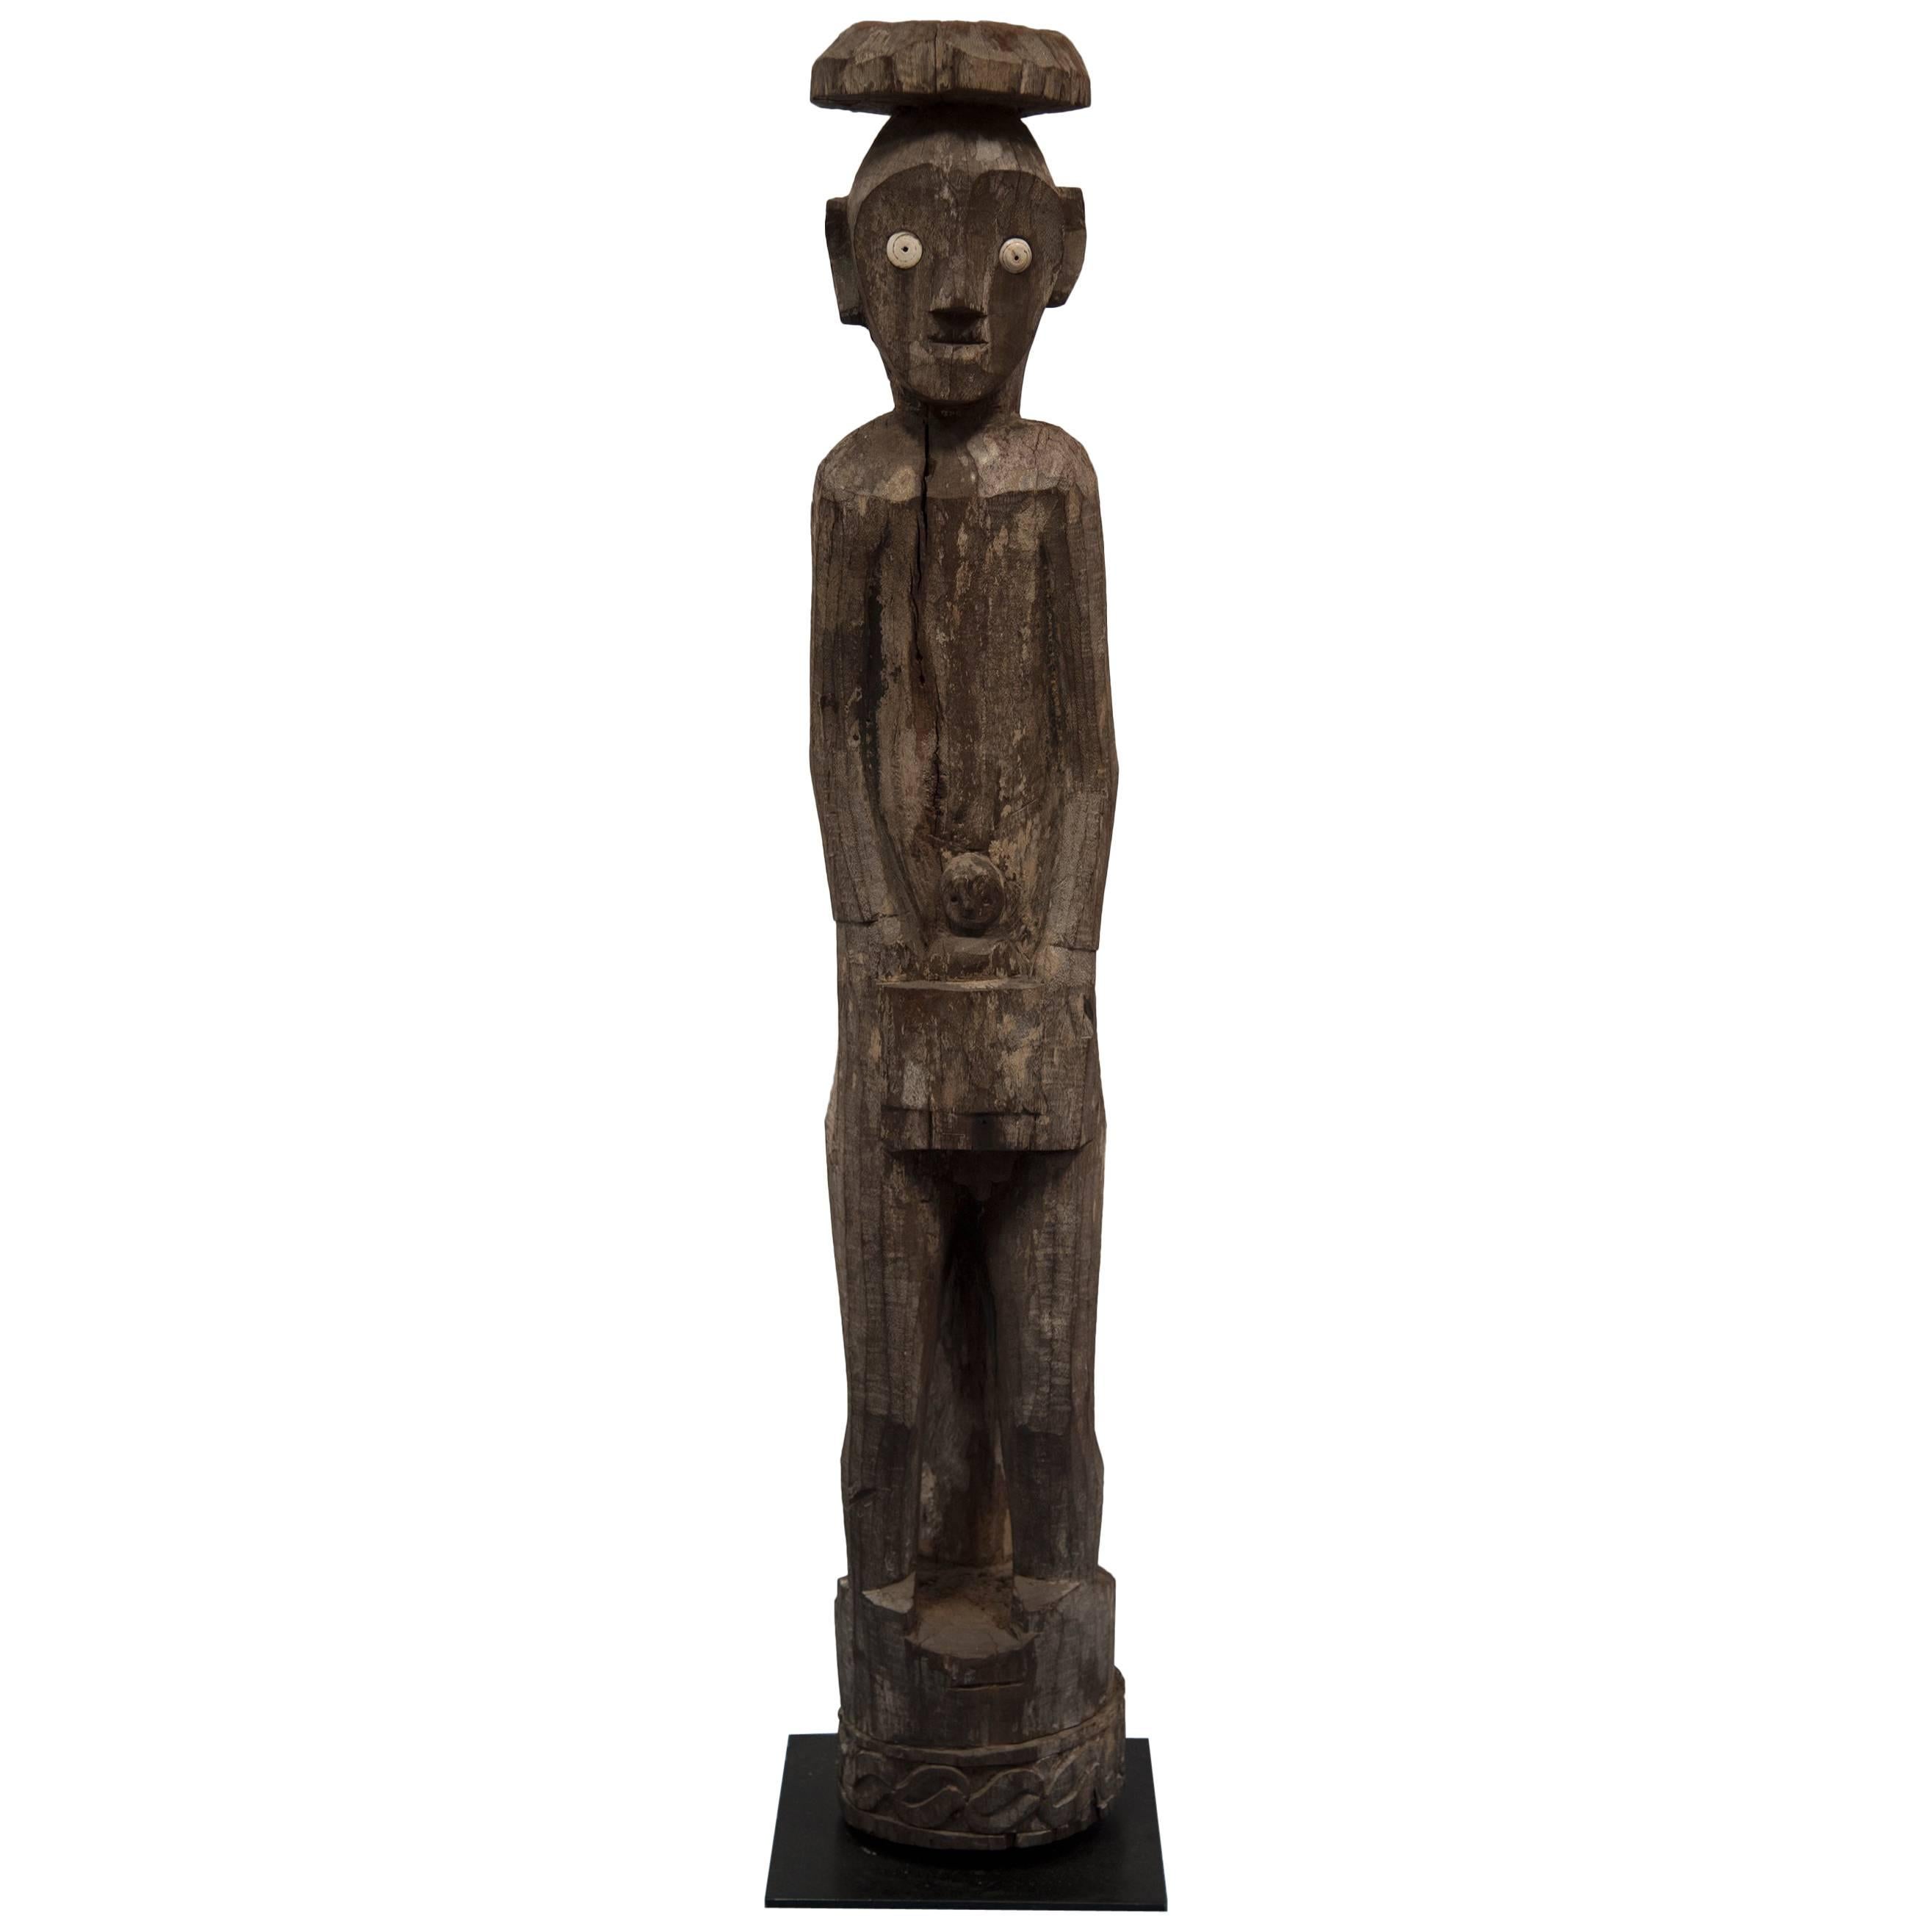 Eine geschnitzte Holzfigur von Maile mit Kind. Eine aus Hampadong Kalimantan geschnitzte, stehende Skulptur des Volkes der Iban Dayak [Ot Danum Dayak] aus den inneren Regenwäldern von BORNEO. Eine außergewöhnlich seltene Hartholz und Muschel